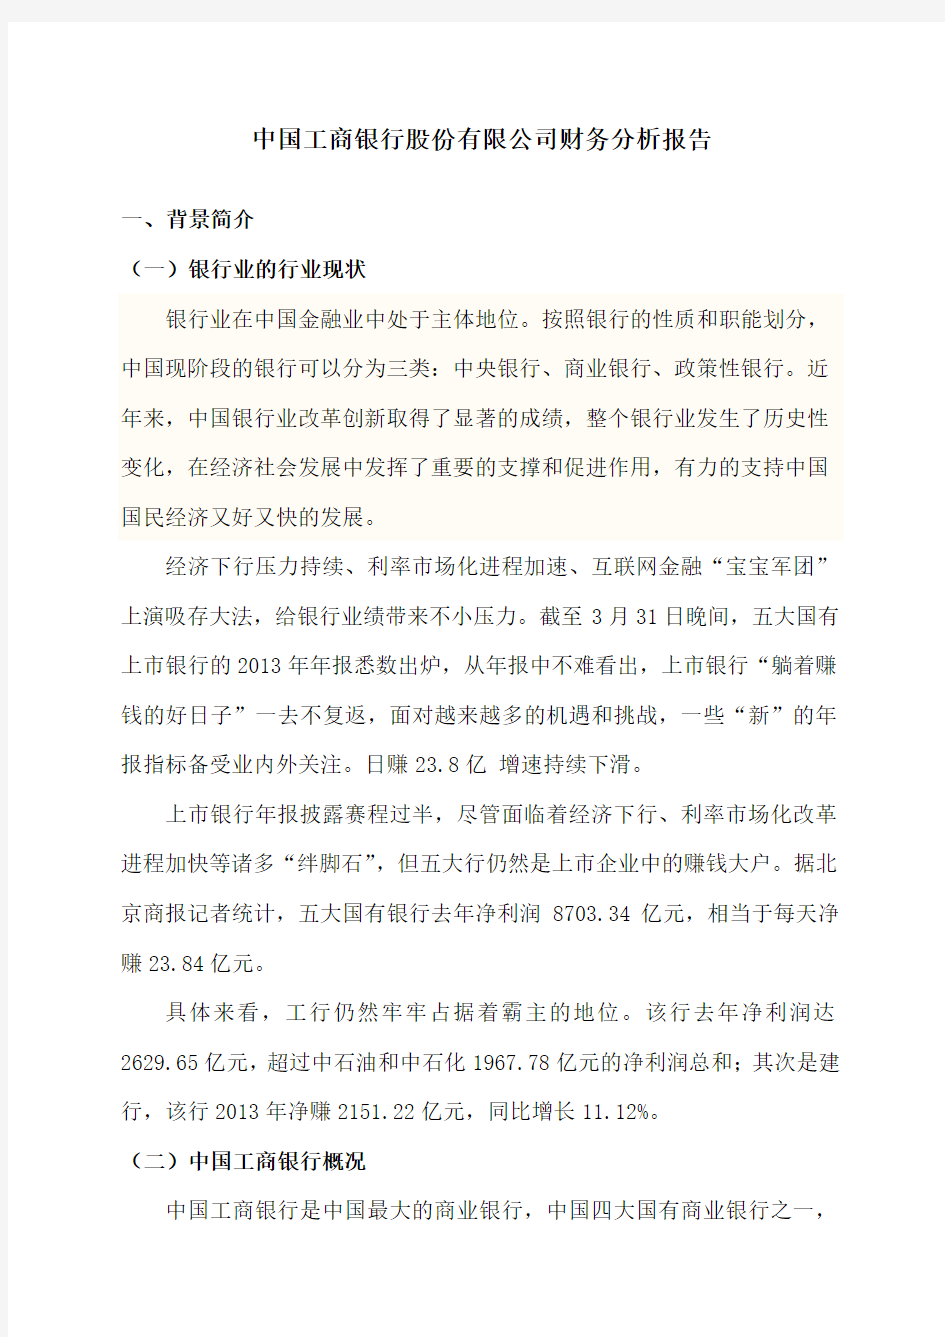 中国工商银行股份有限公司财务分析报告